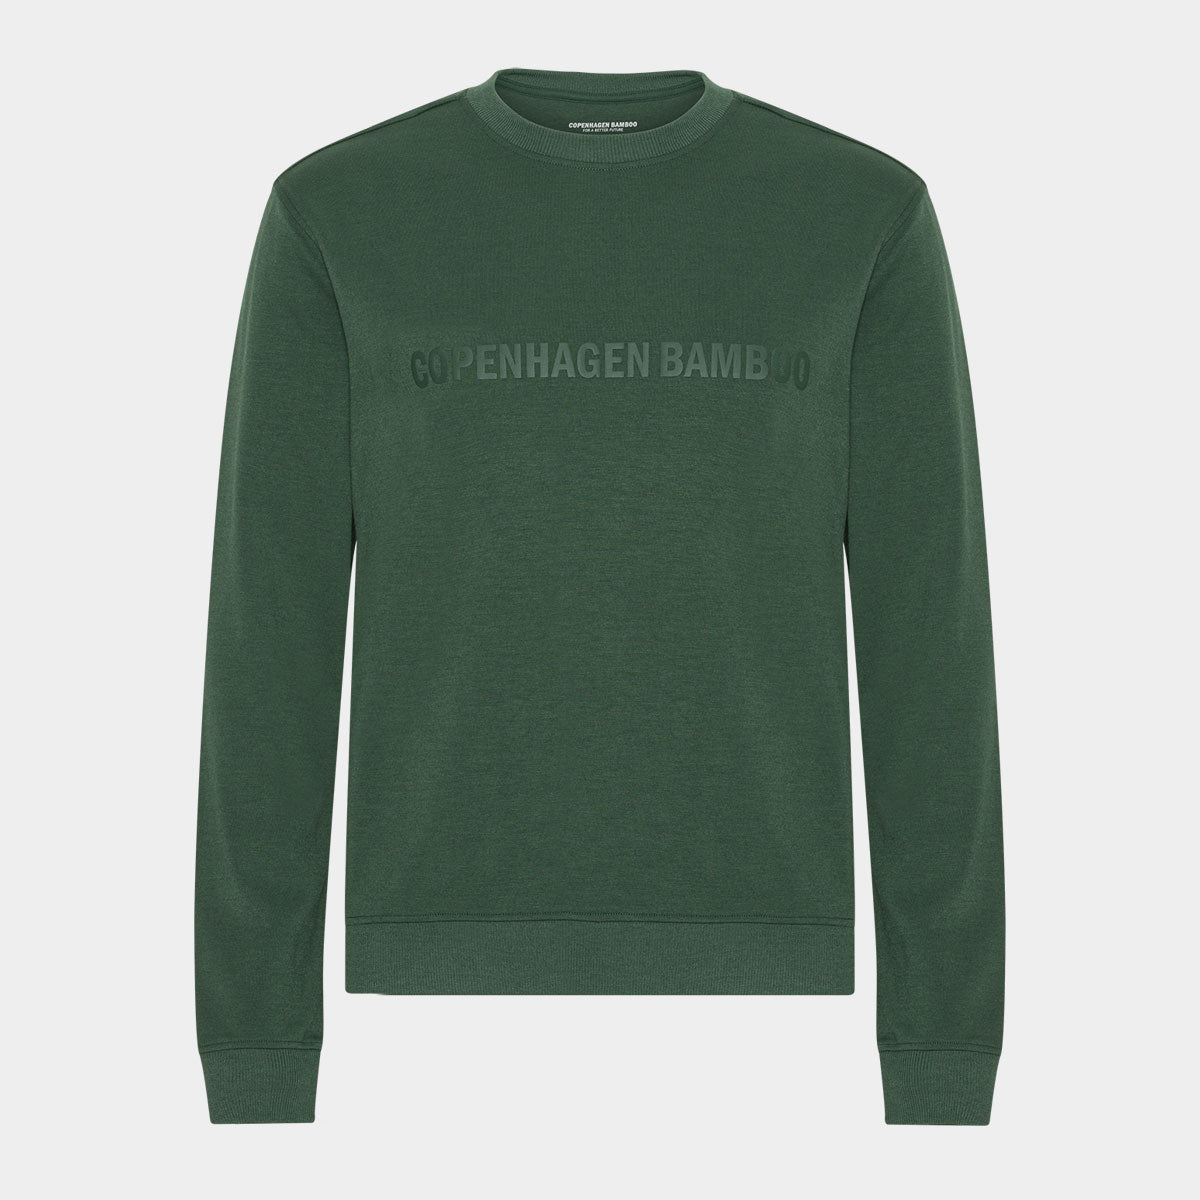 Billede af Grøn bambus sweatshirt med logo, XS hos Bambustøj.dk